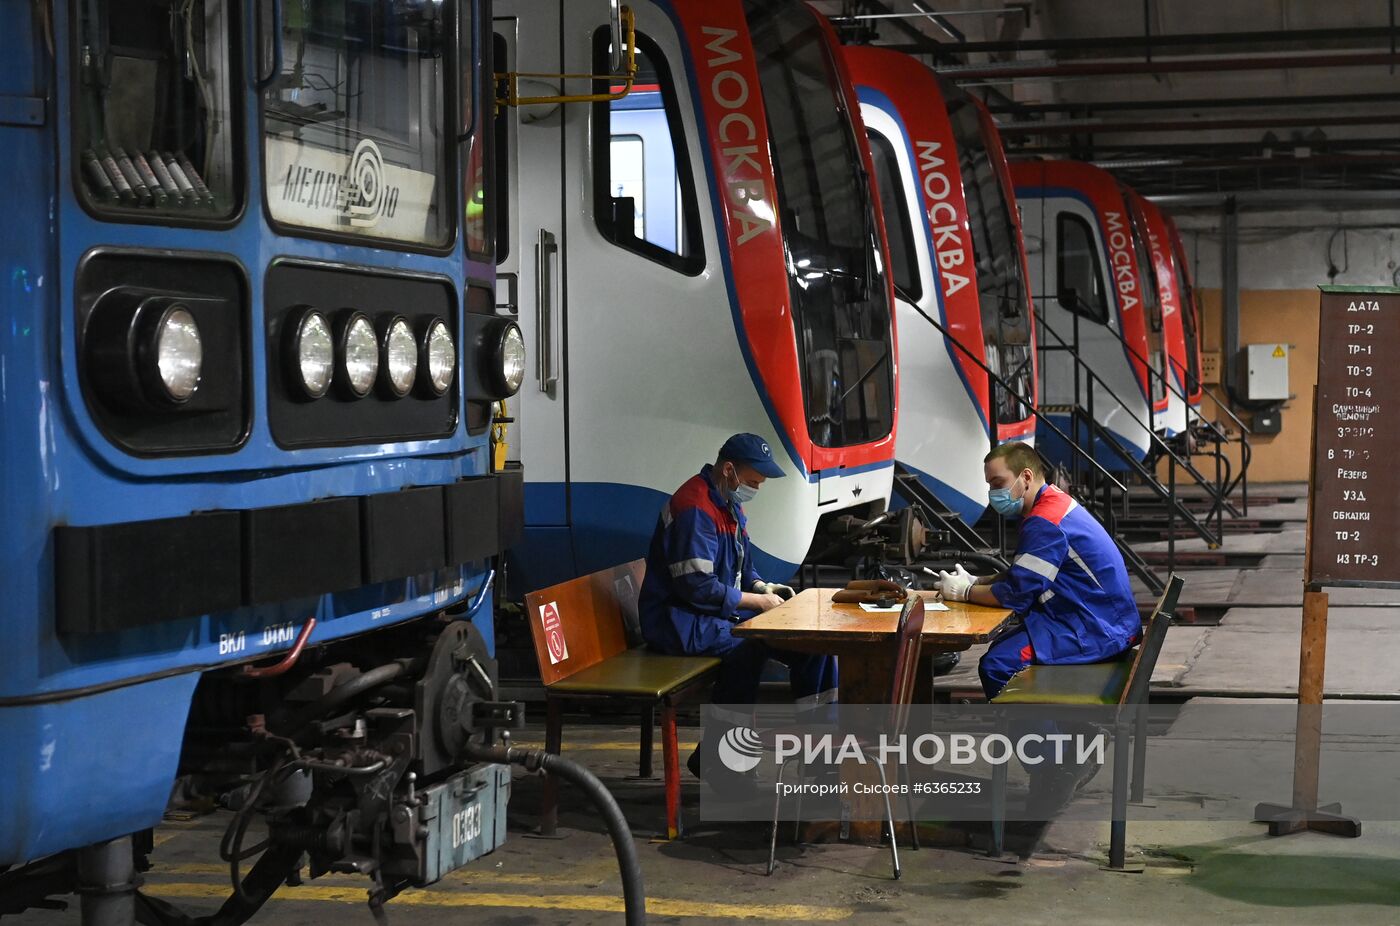 Дезинфекция поездов московского метро